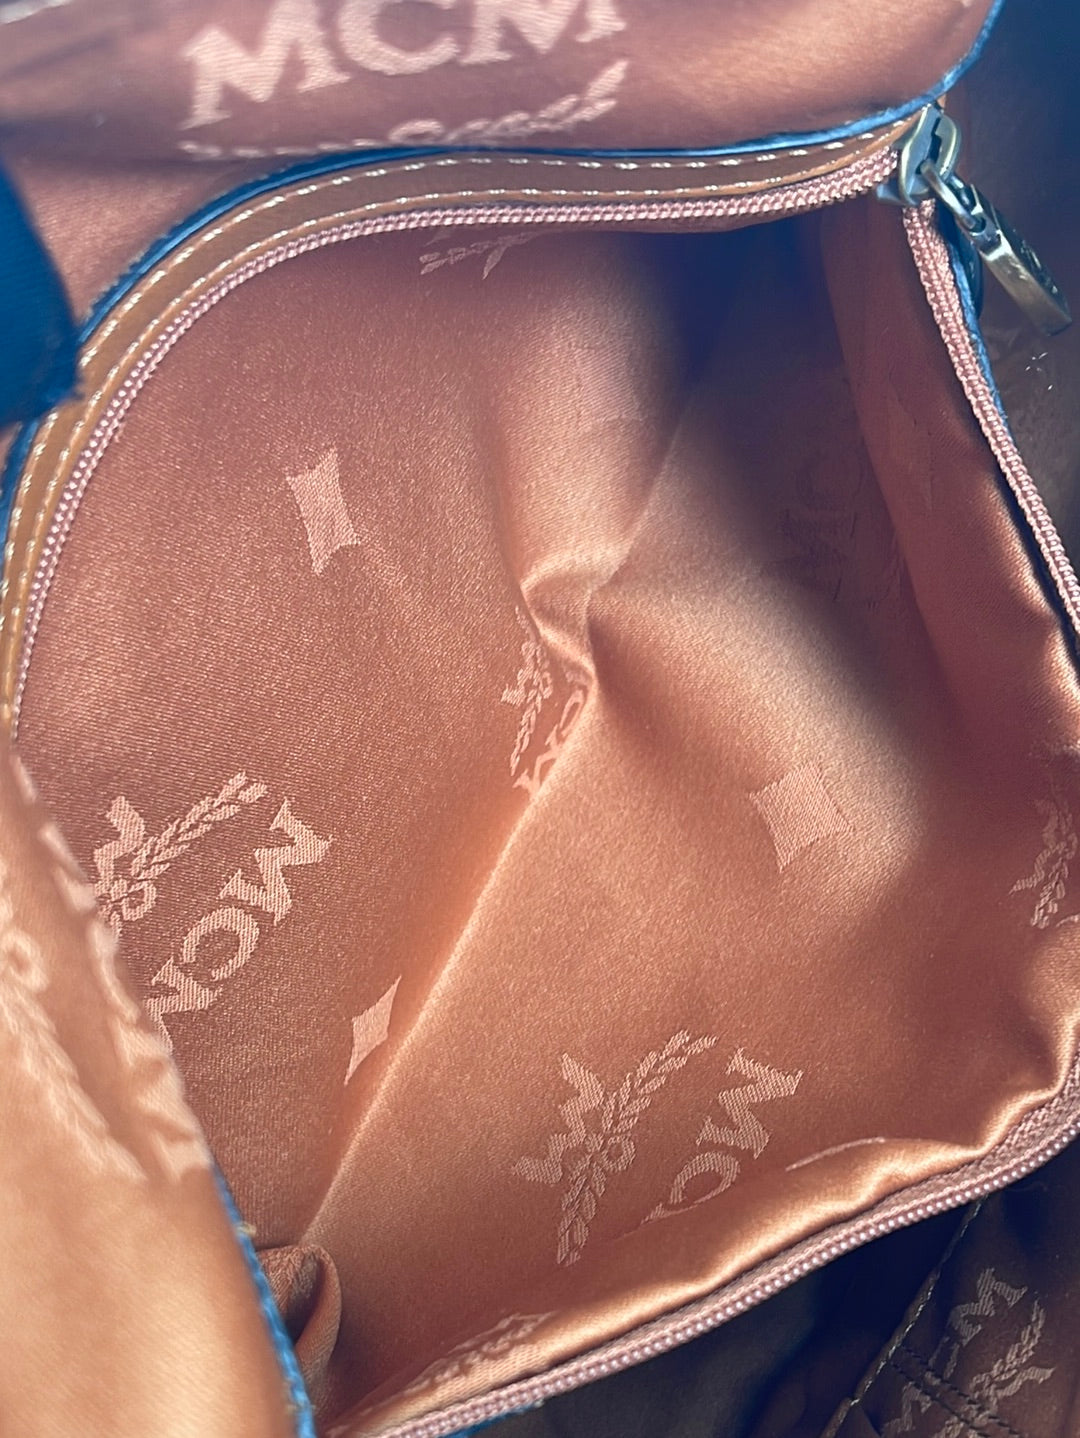 Hand bag MCM made in Korea original full leather